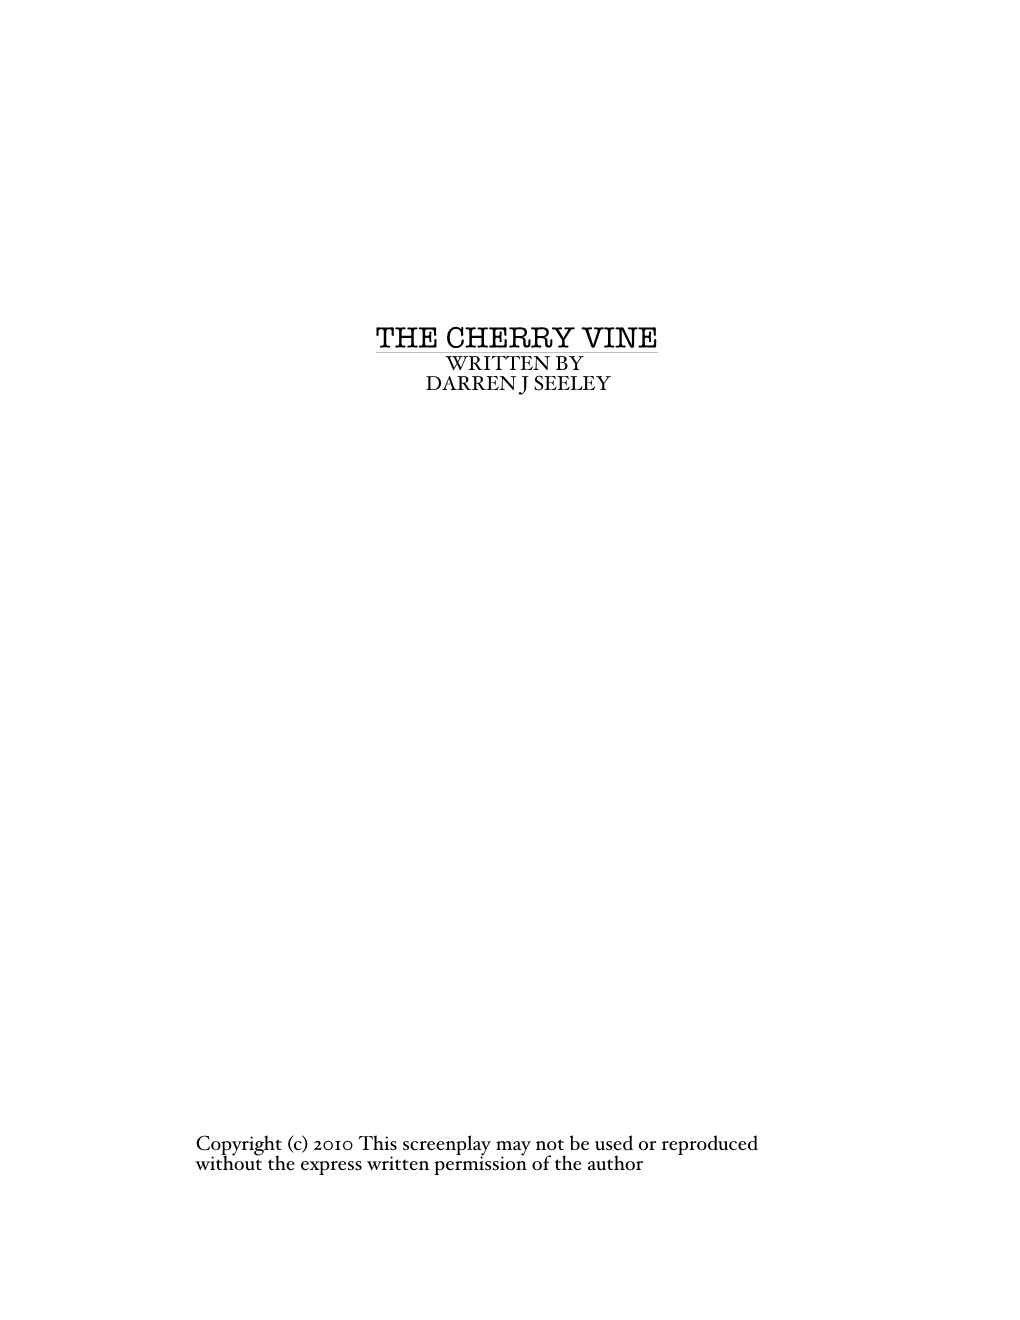 The Cherry Vine Written by Darren J Seeley